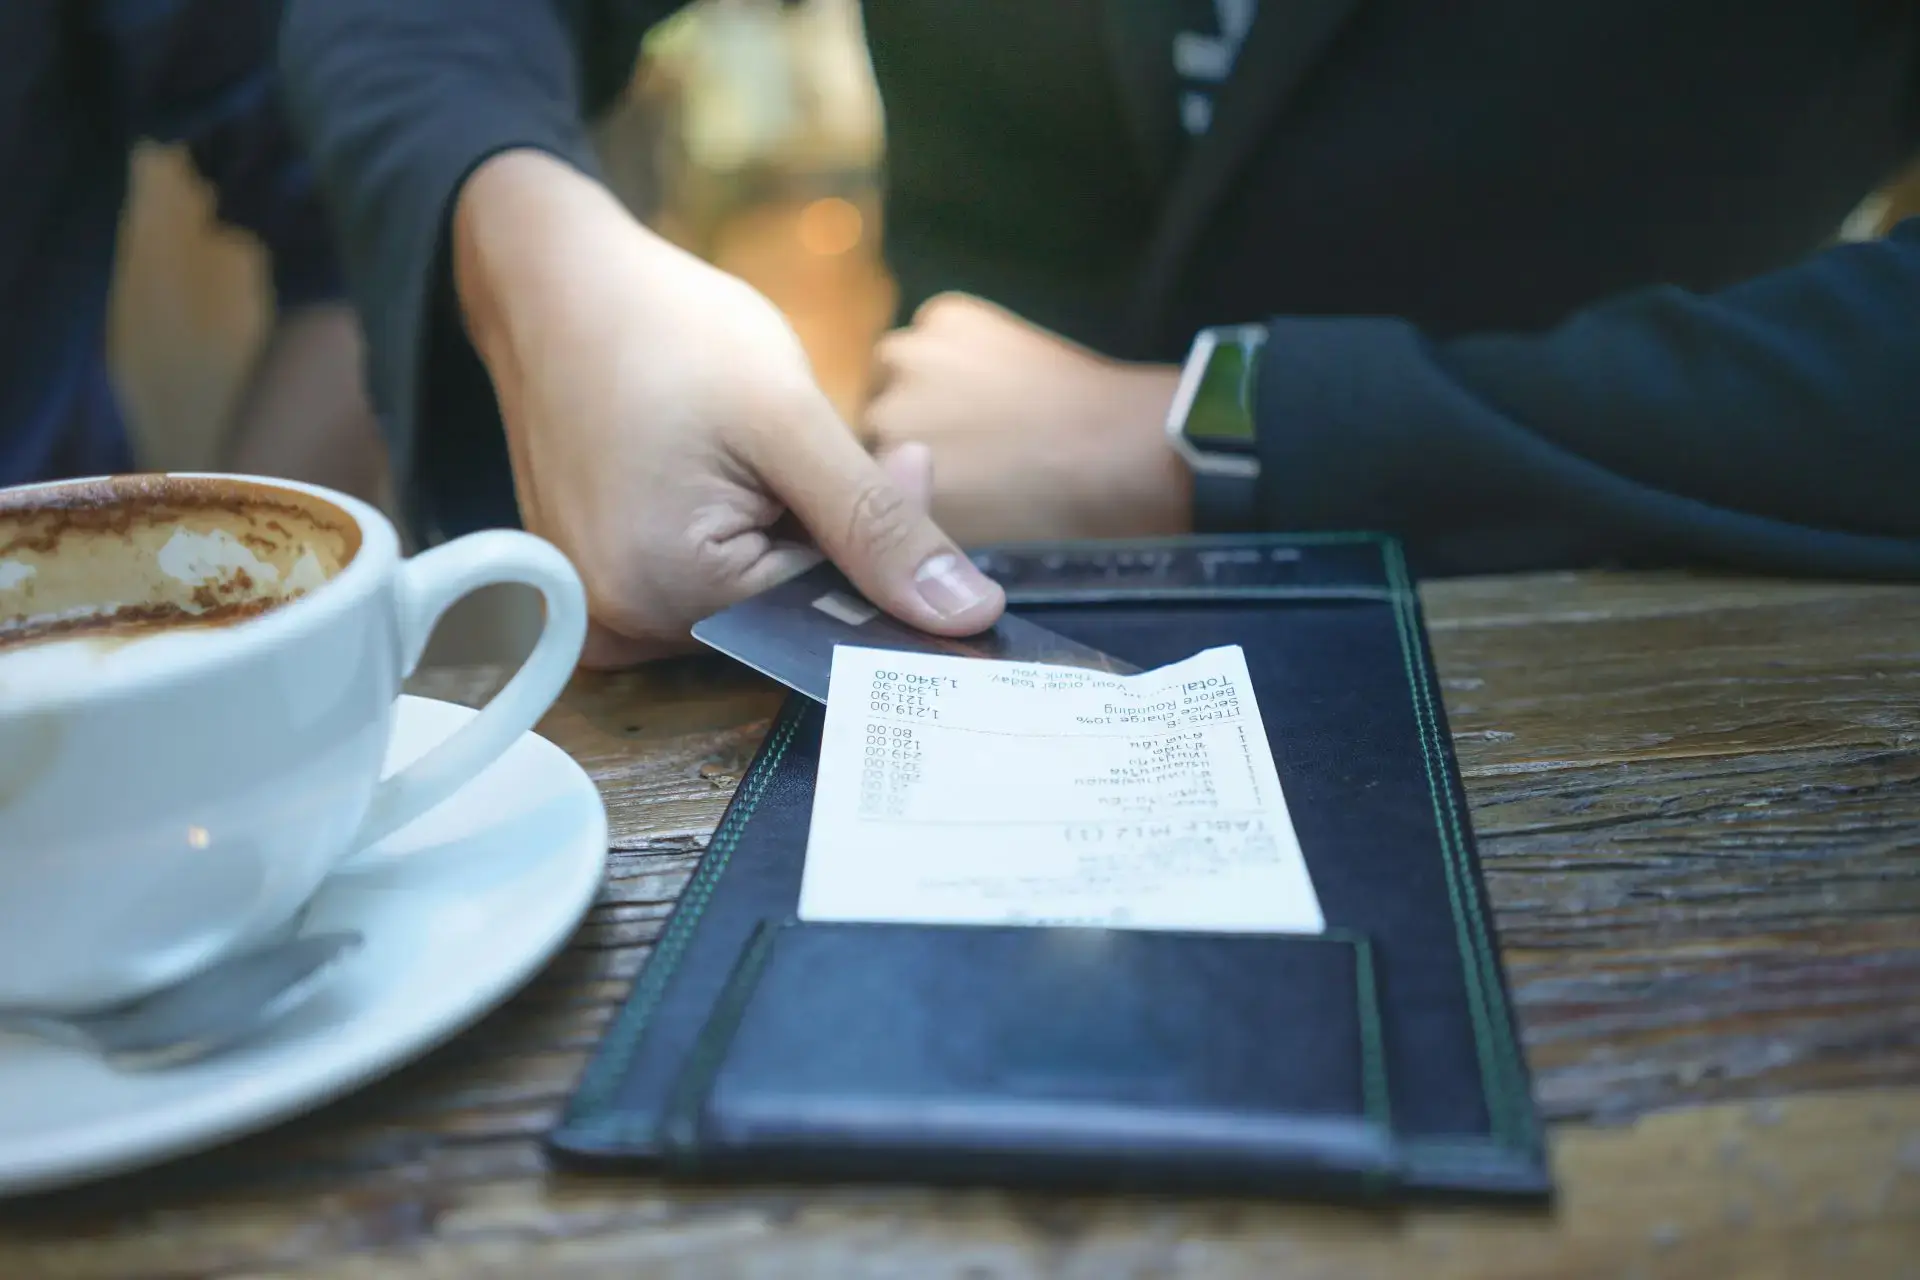 Opłata serwisowa w restauracji – czy warto ją wprowadzić?